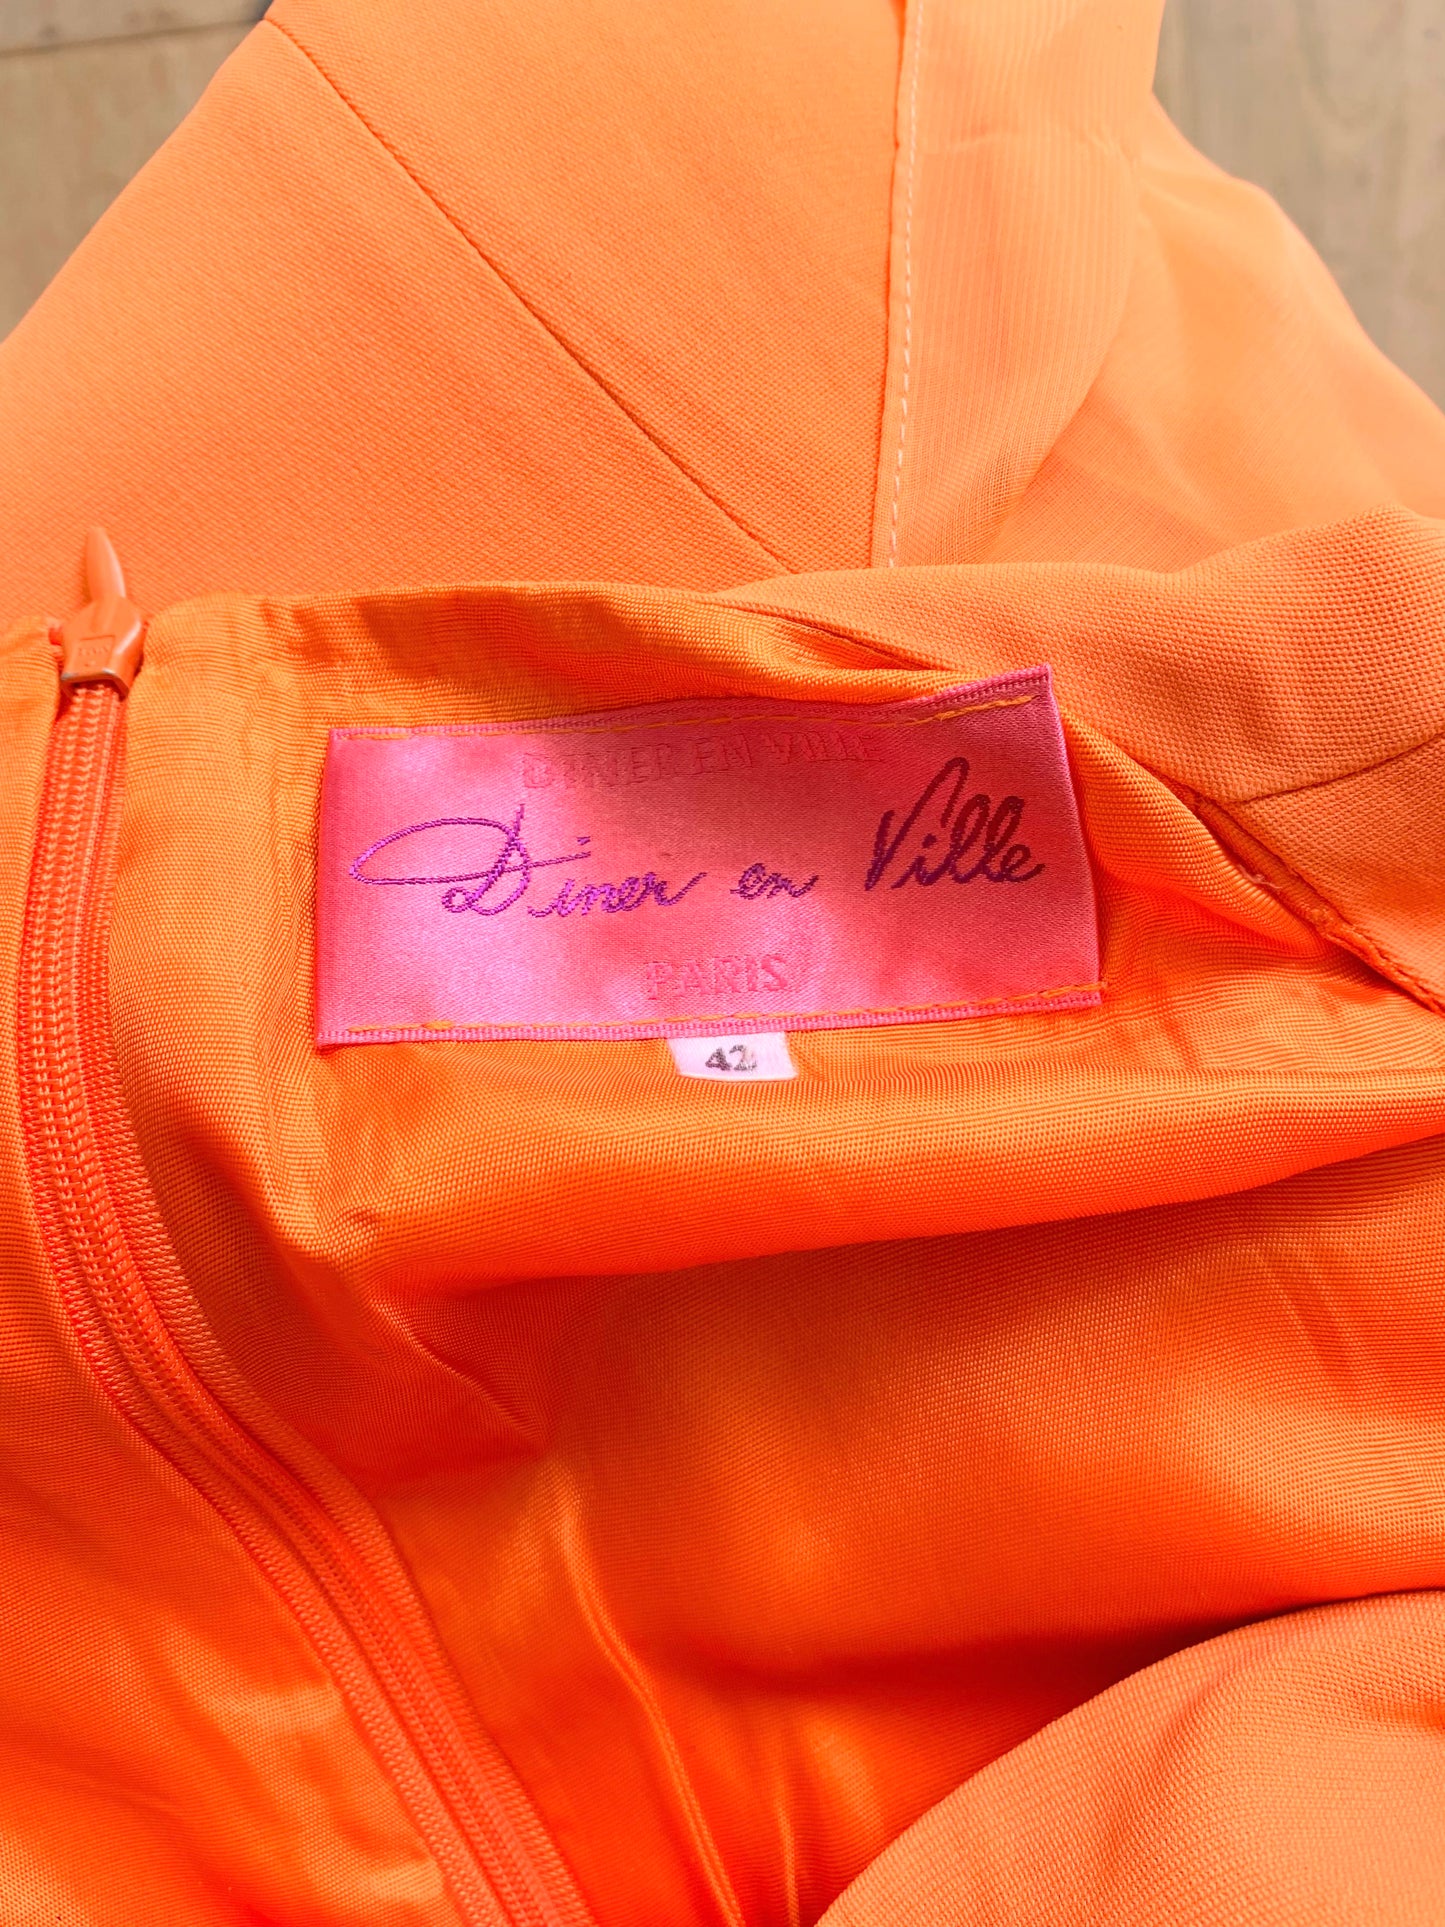 Robe vintage de soirée orange manches courtes La friperie vintage